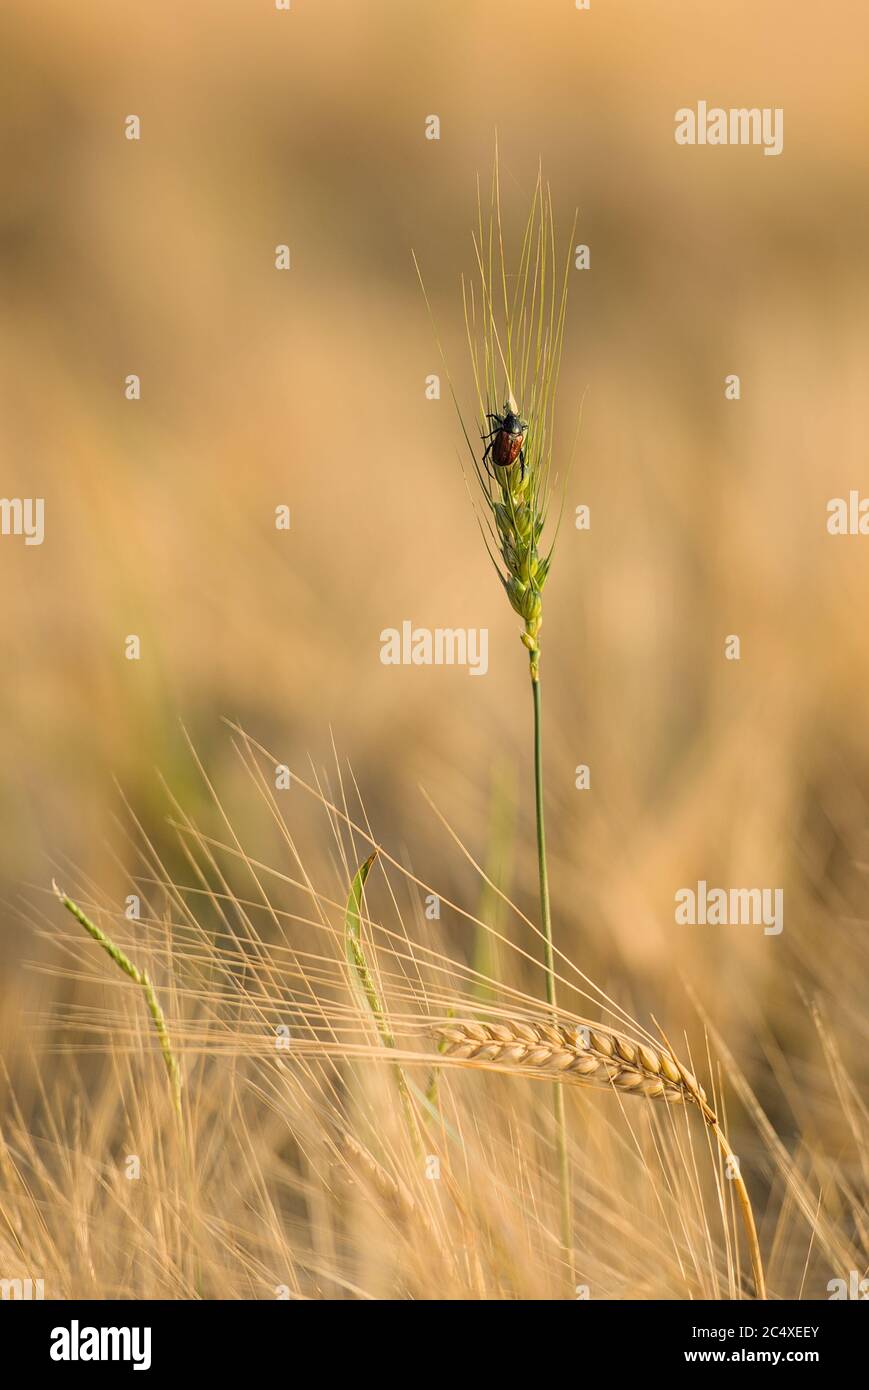 Käfer auf einer grünen Ähre im Getreidefeld Stock Photo